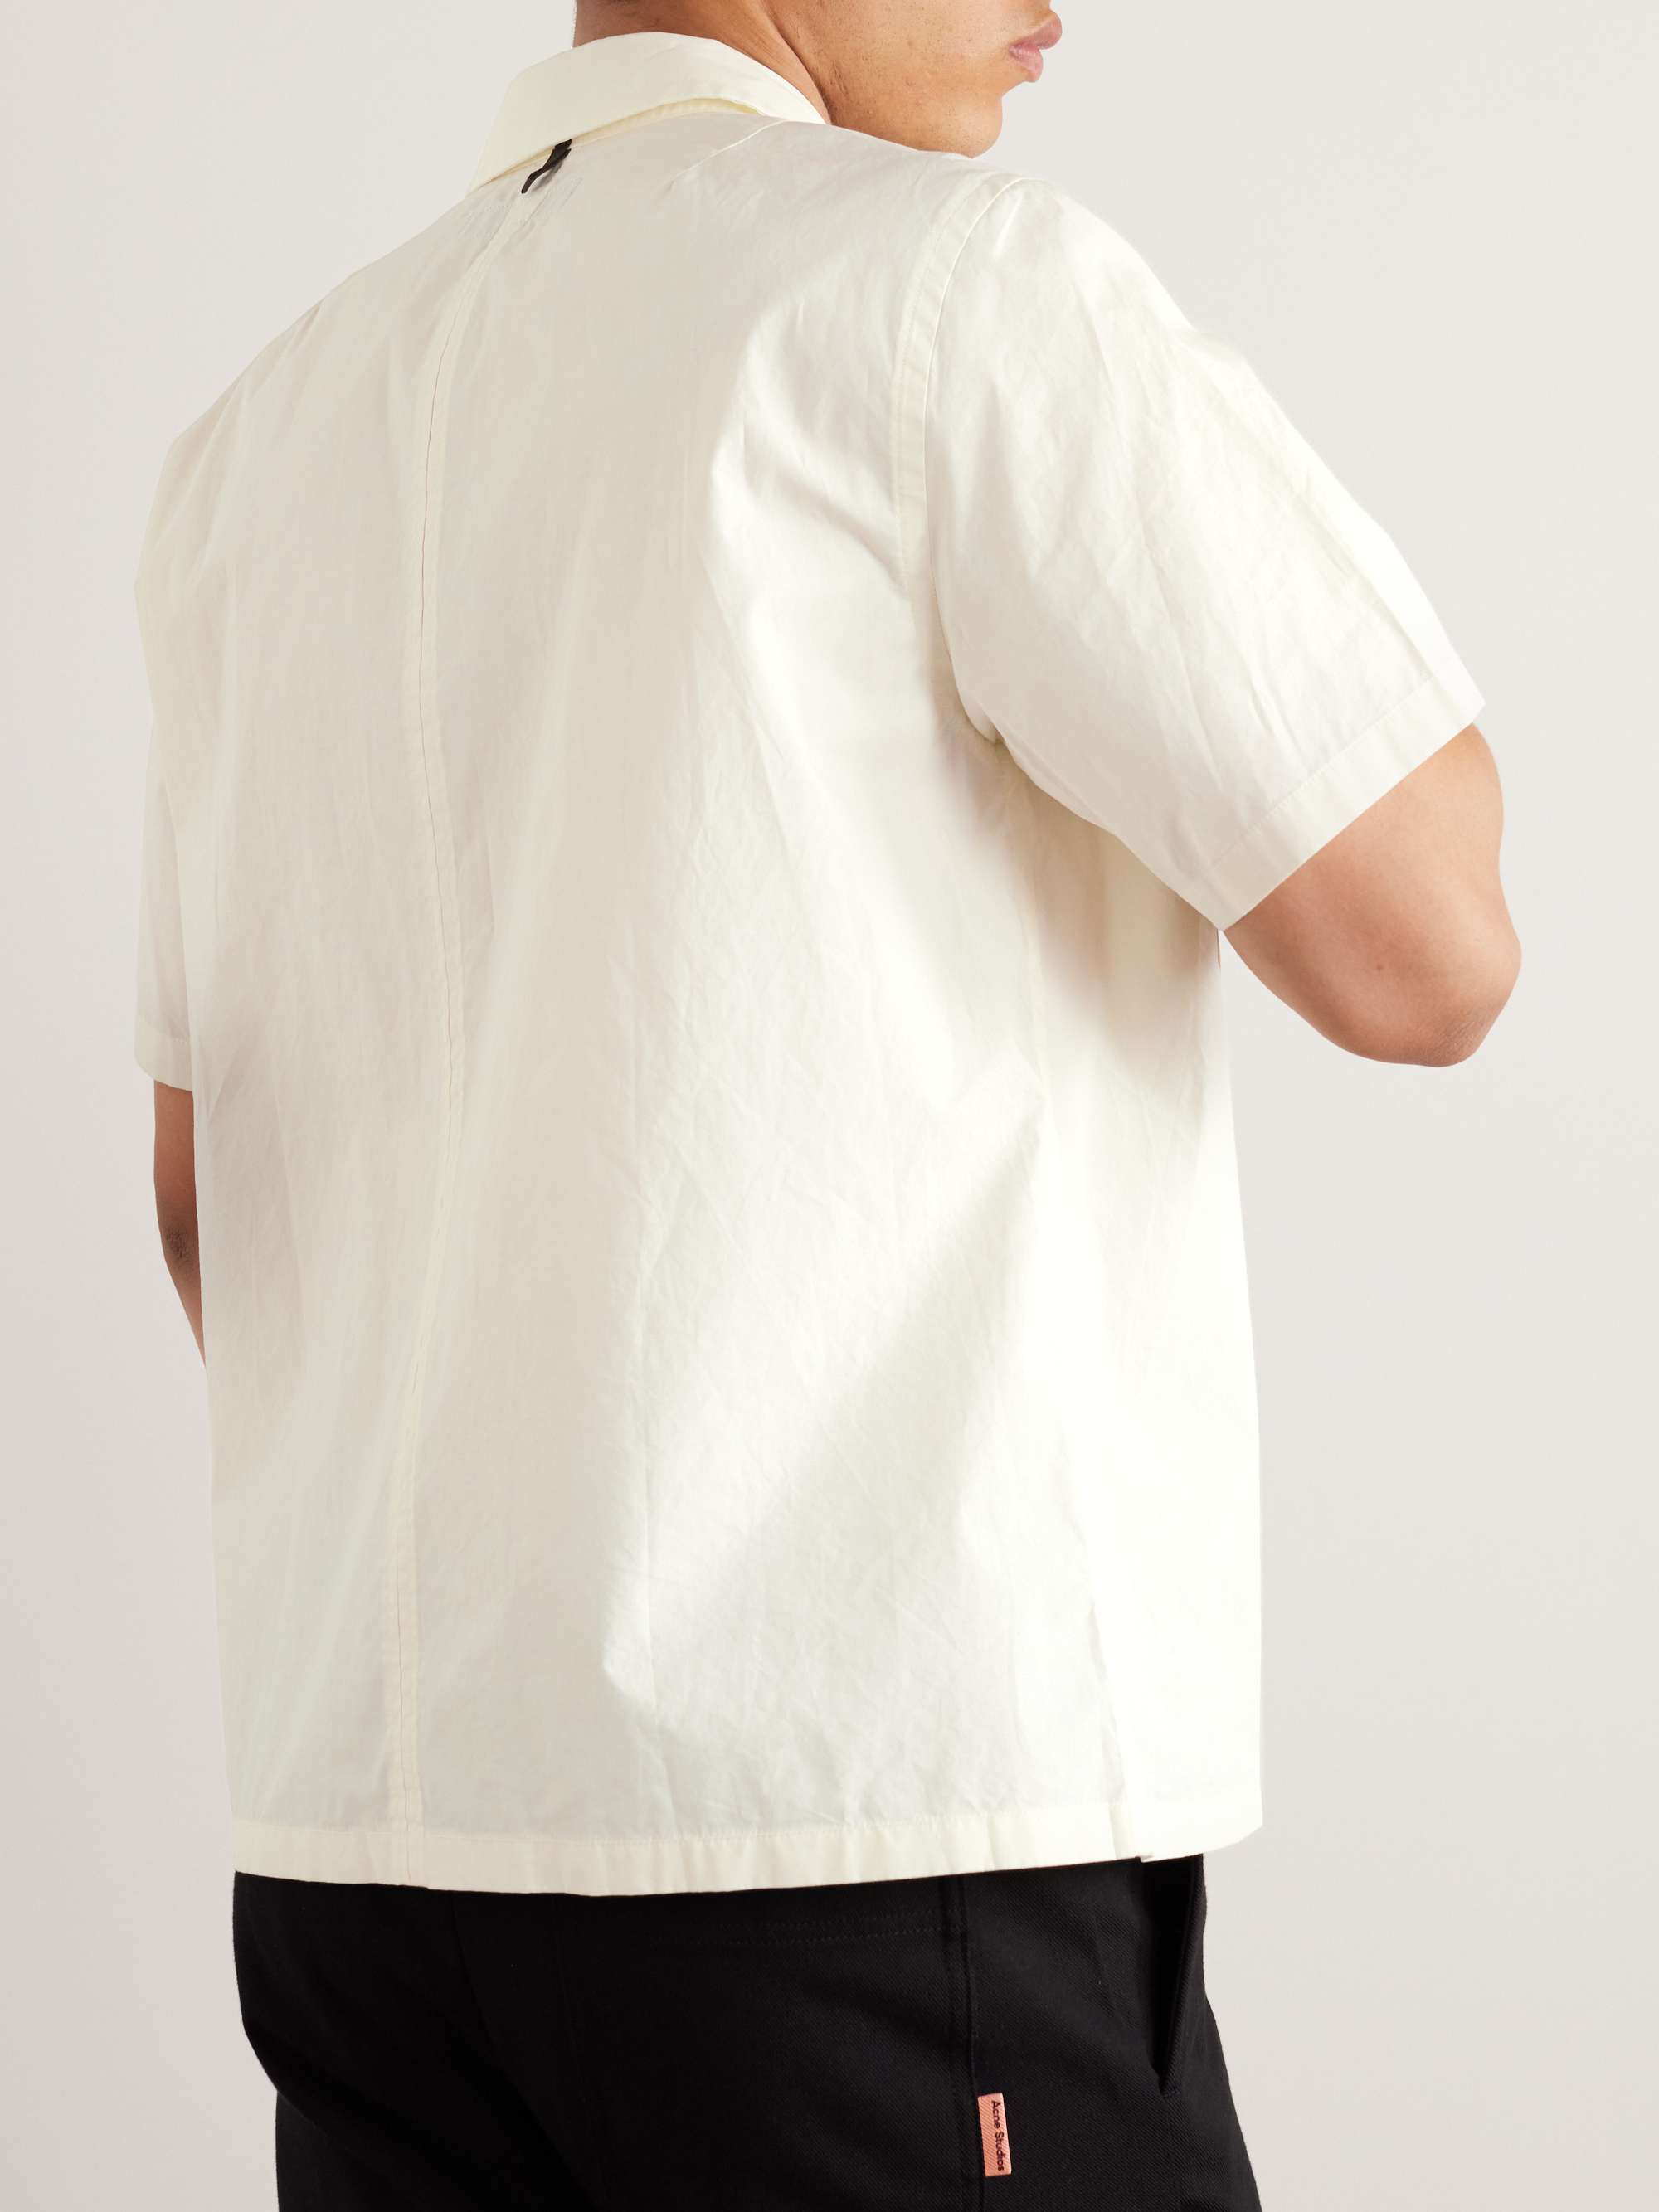 RAG & BONE Stanton Cotton Shirt for Men | MR PORTER